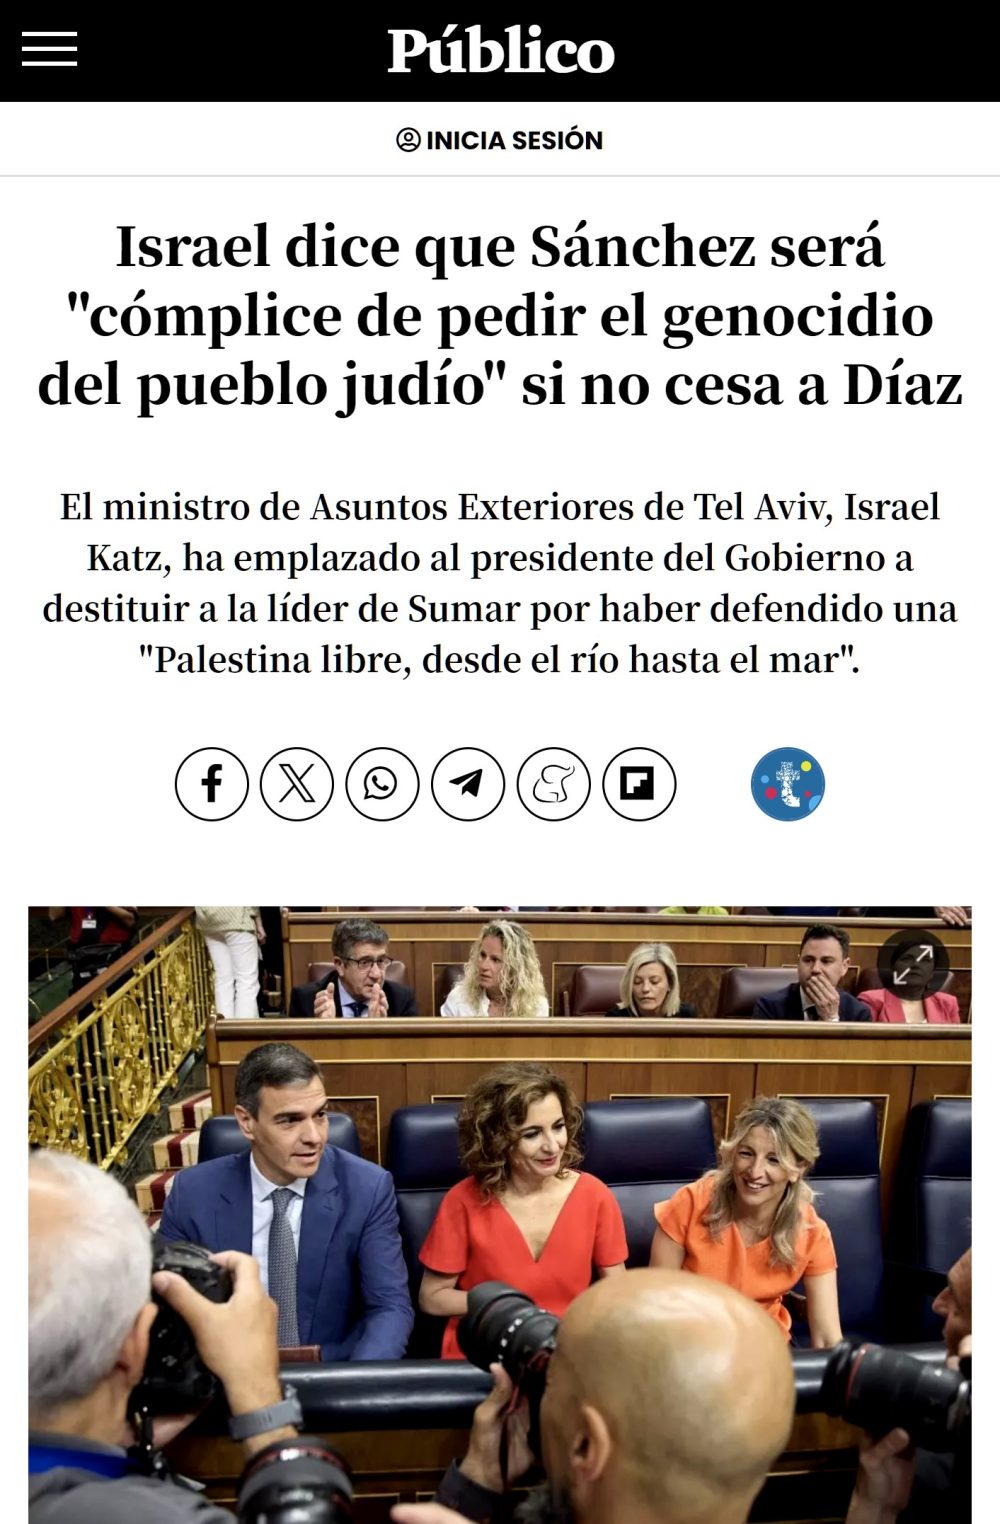 Israel dice que Sánchez será "cómplice de pedir el gеnocidio del pueblo judío" si no cesa a Díaz